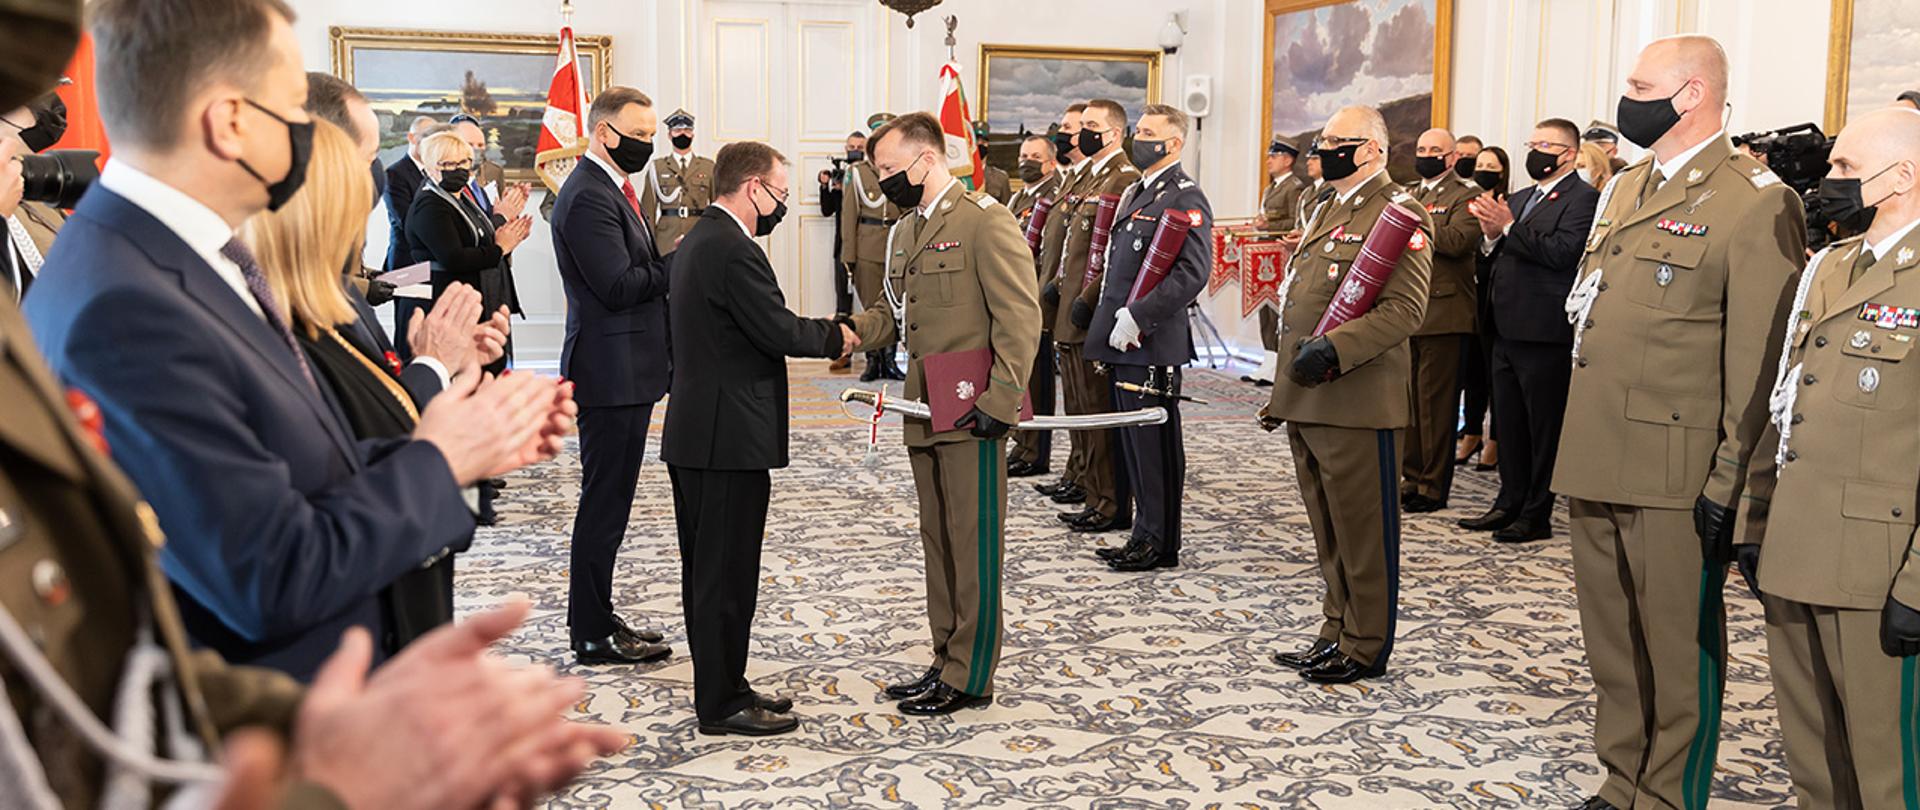 Na zdjęciu widać ministra Mariusza Kamińskiego składającego gratulacje jednemu z nominowanych generałów SG i innych uczestników uroczystości w Belwederze.